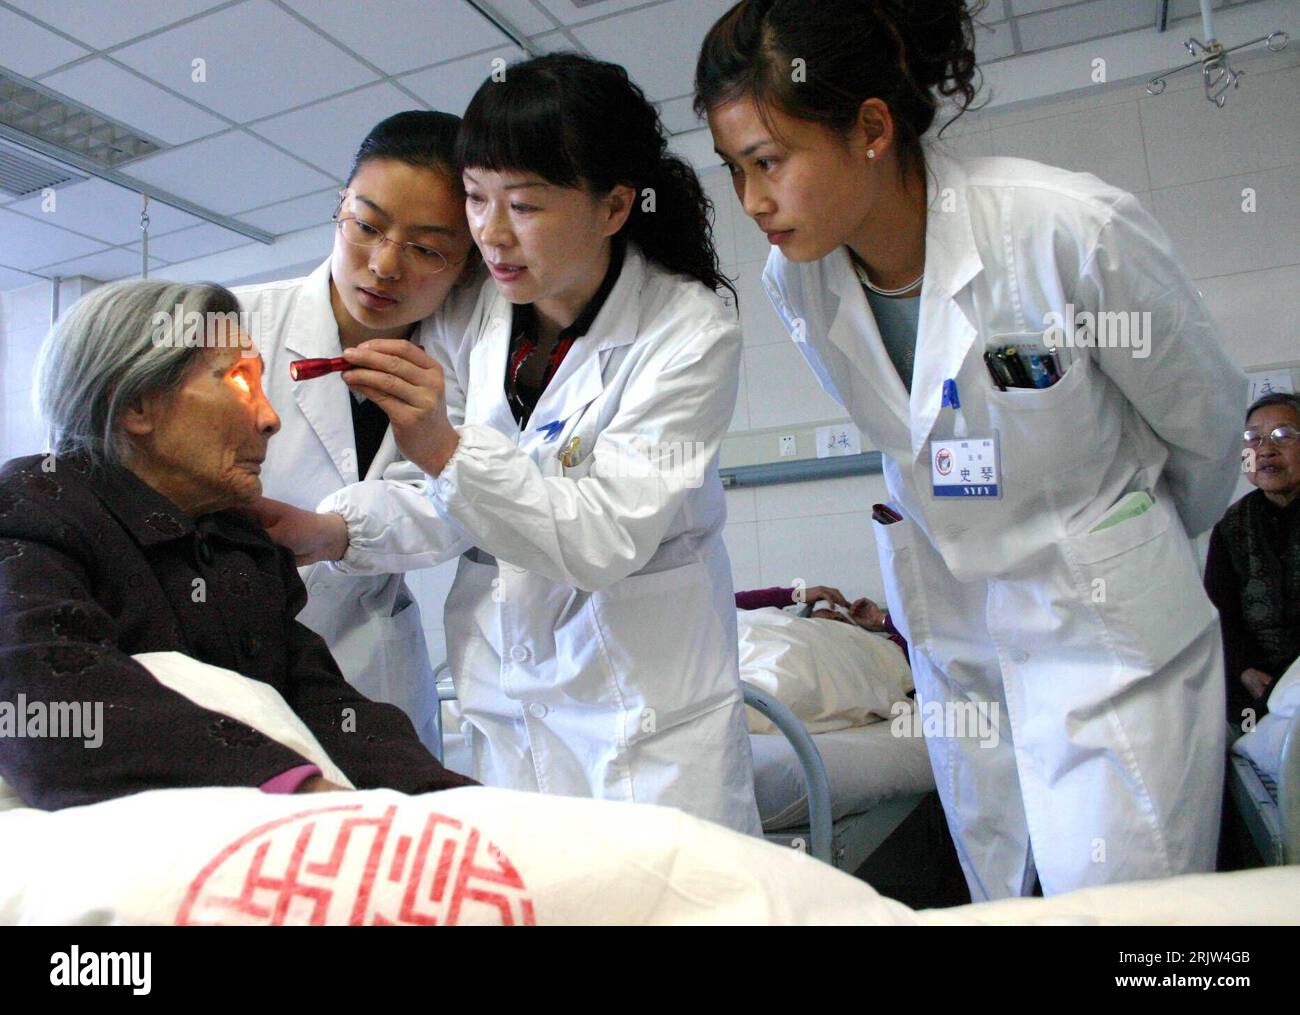 Bildnummer: 51844613  Datum: 24.04.2007  Copyright: imago/Xinhua Junge Ärzte untersuchen die Augen einer alten Frau die am Grauen Star erkrankt ist im Ningxia Medical College in Yinchuan in der Region Ningxia Hui PUBLICATIONxNOTxINxCHN, Personen; 2007, Yinchuan, Arzt, Ärzte, Krankheit, krank, kranke, Kranker, Frau, alt, alte, Rentner, Senioren, Seniorin, Krankenhaus, Krankenhäuser, Klinik, Kliniken, untersuchen, Untersuchung, Behandlung, medizinische, medizinisch, jung, junge, Grauer Star, Graue, Einheimische, Einheimischer, Chinese, Chinesin, Chinesen, Augenkrankheit, Augenkrankheiten; , quer Stock Photo